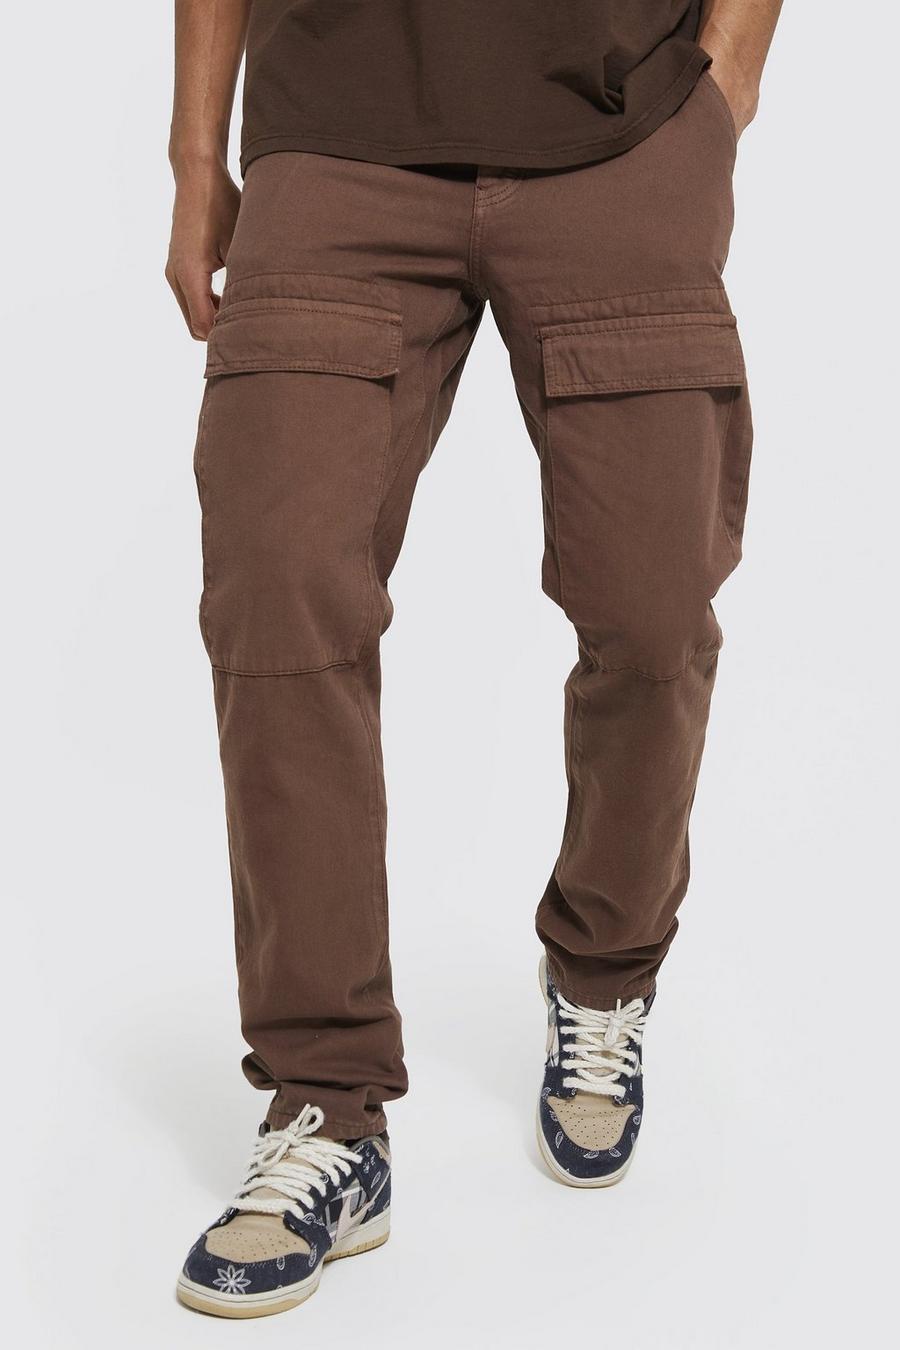 שוקולד ג'ינס בגזרה ישרה עם כיסי דגמ"ח קדמיים, לגברים גבוהים image number 1